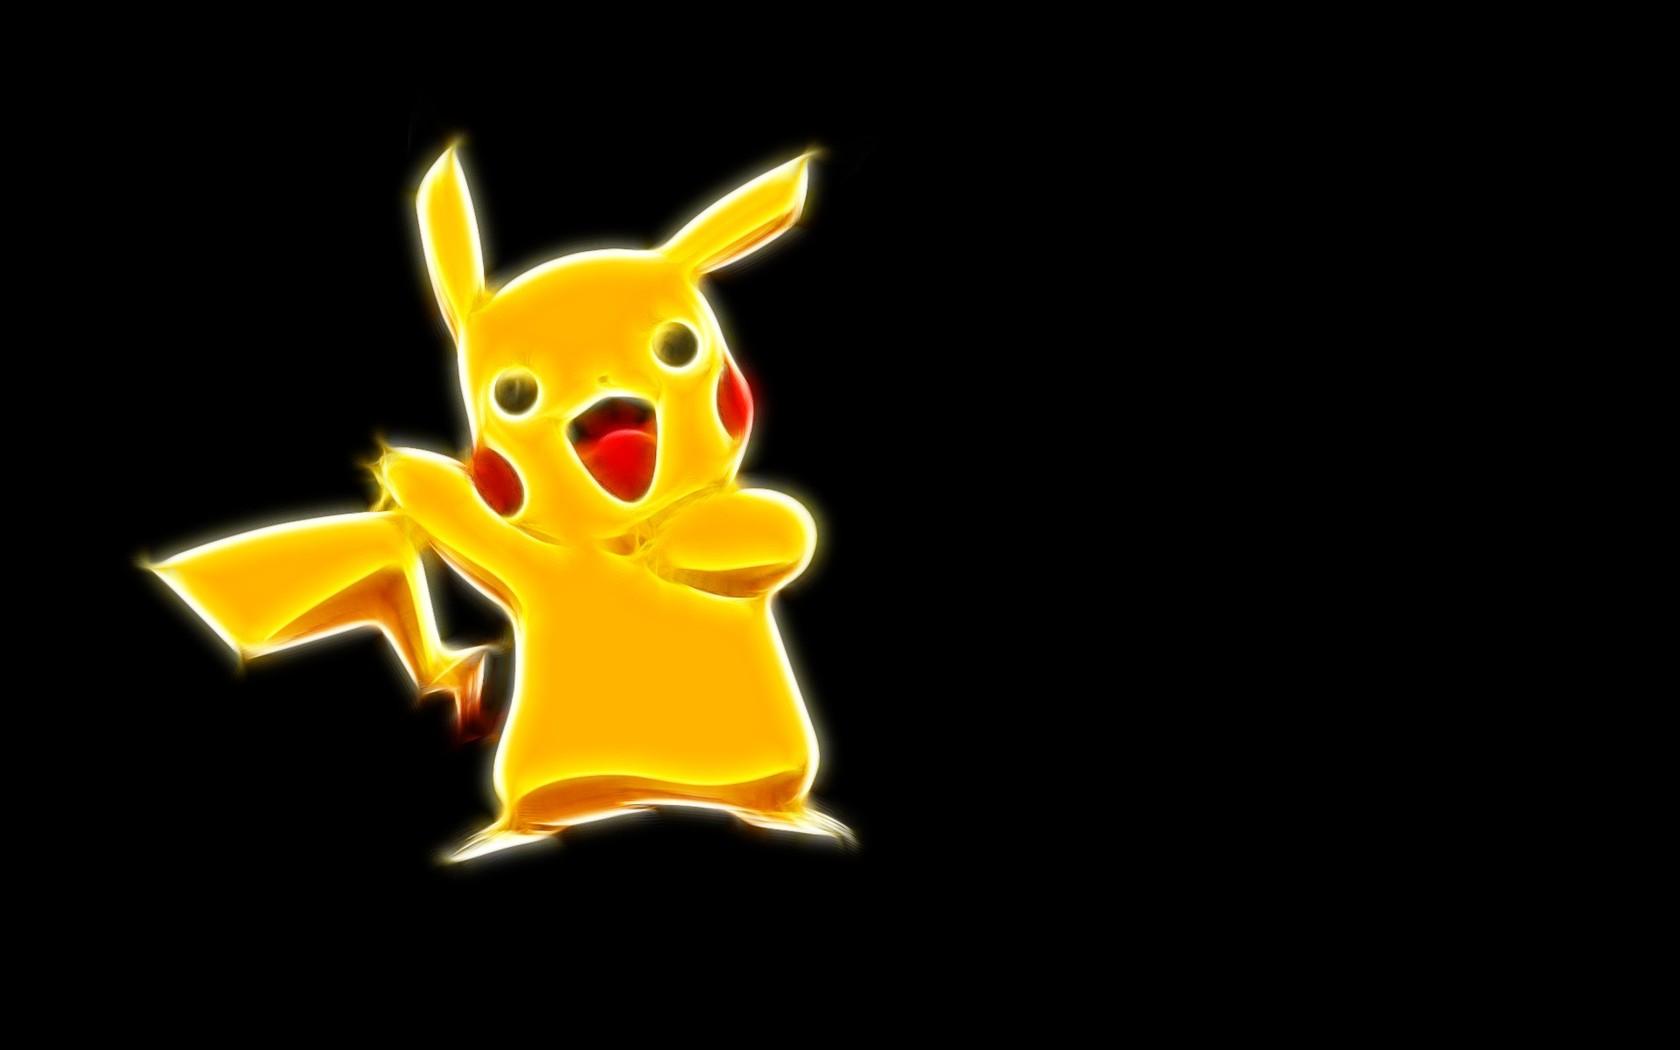 pokemon pikachu wallpaper